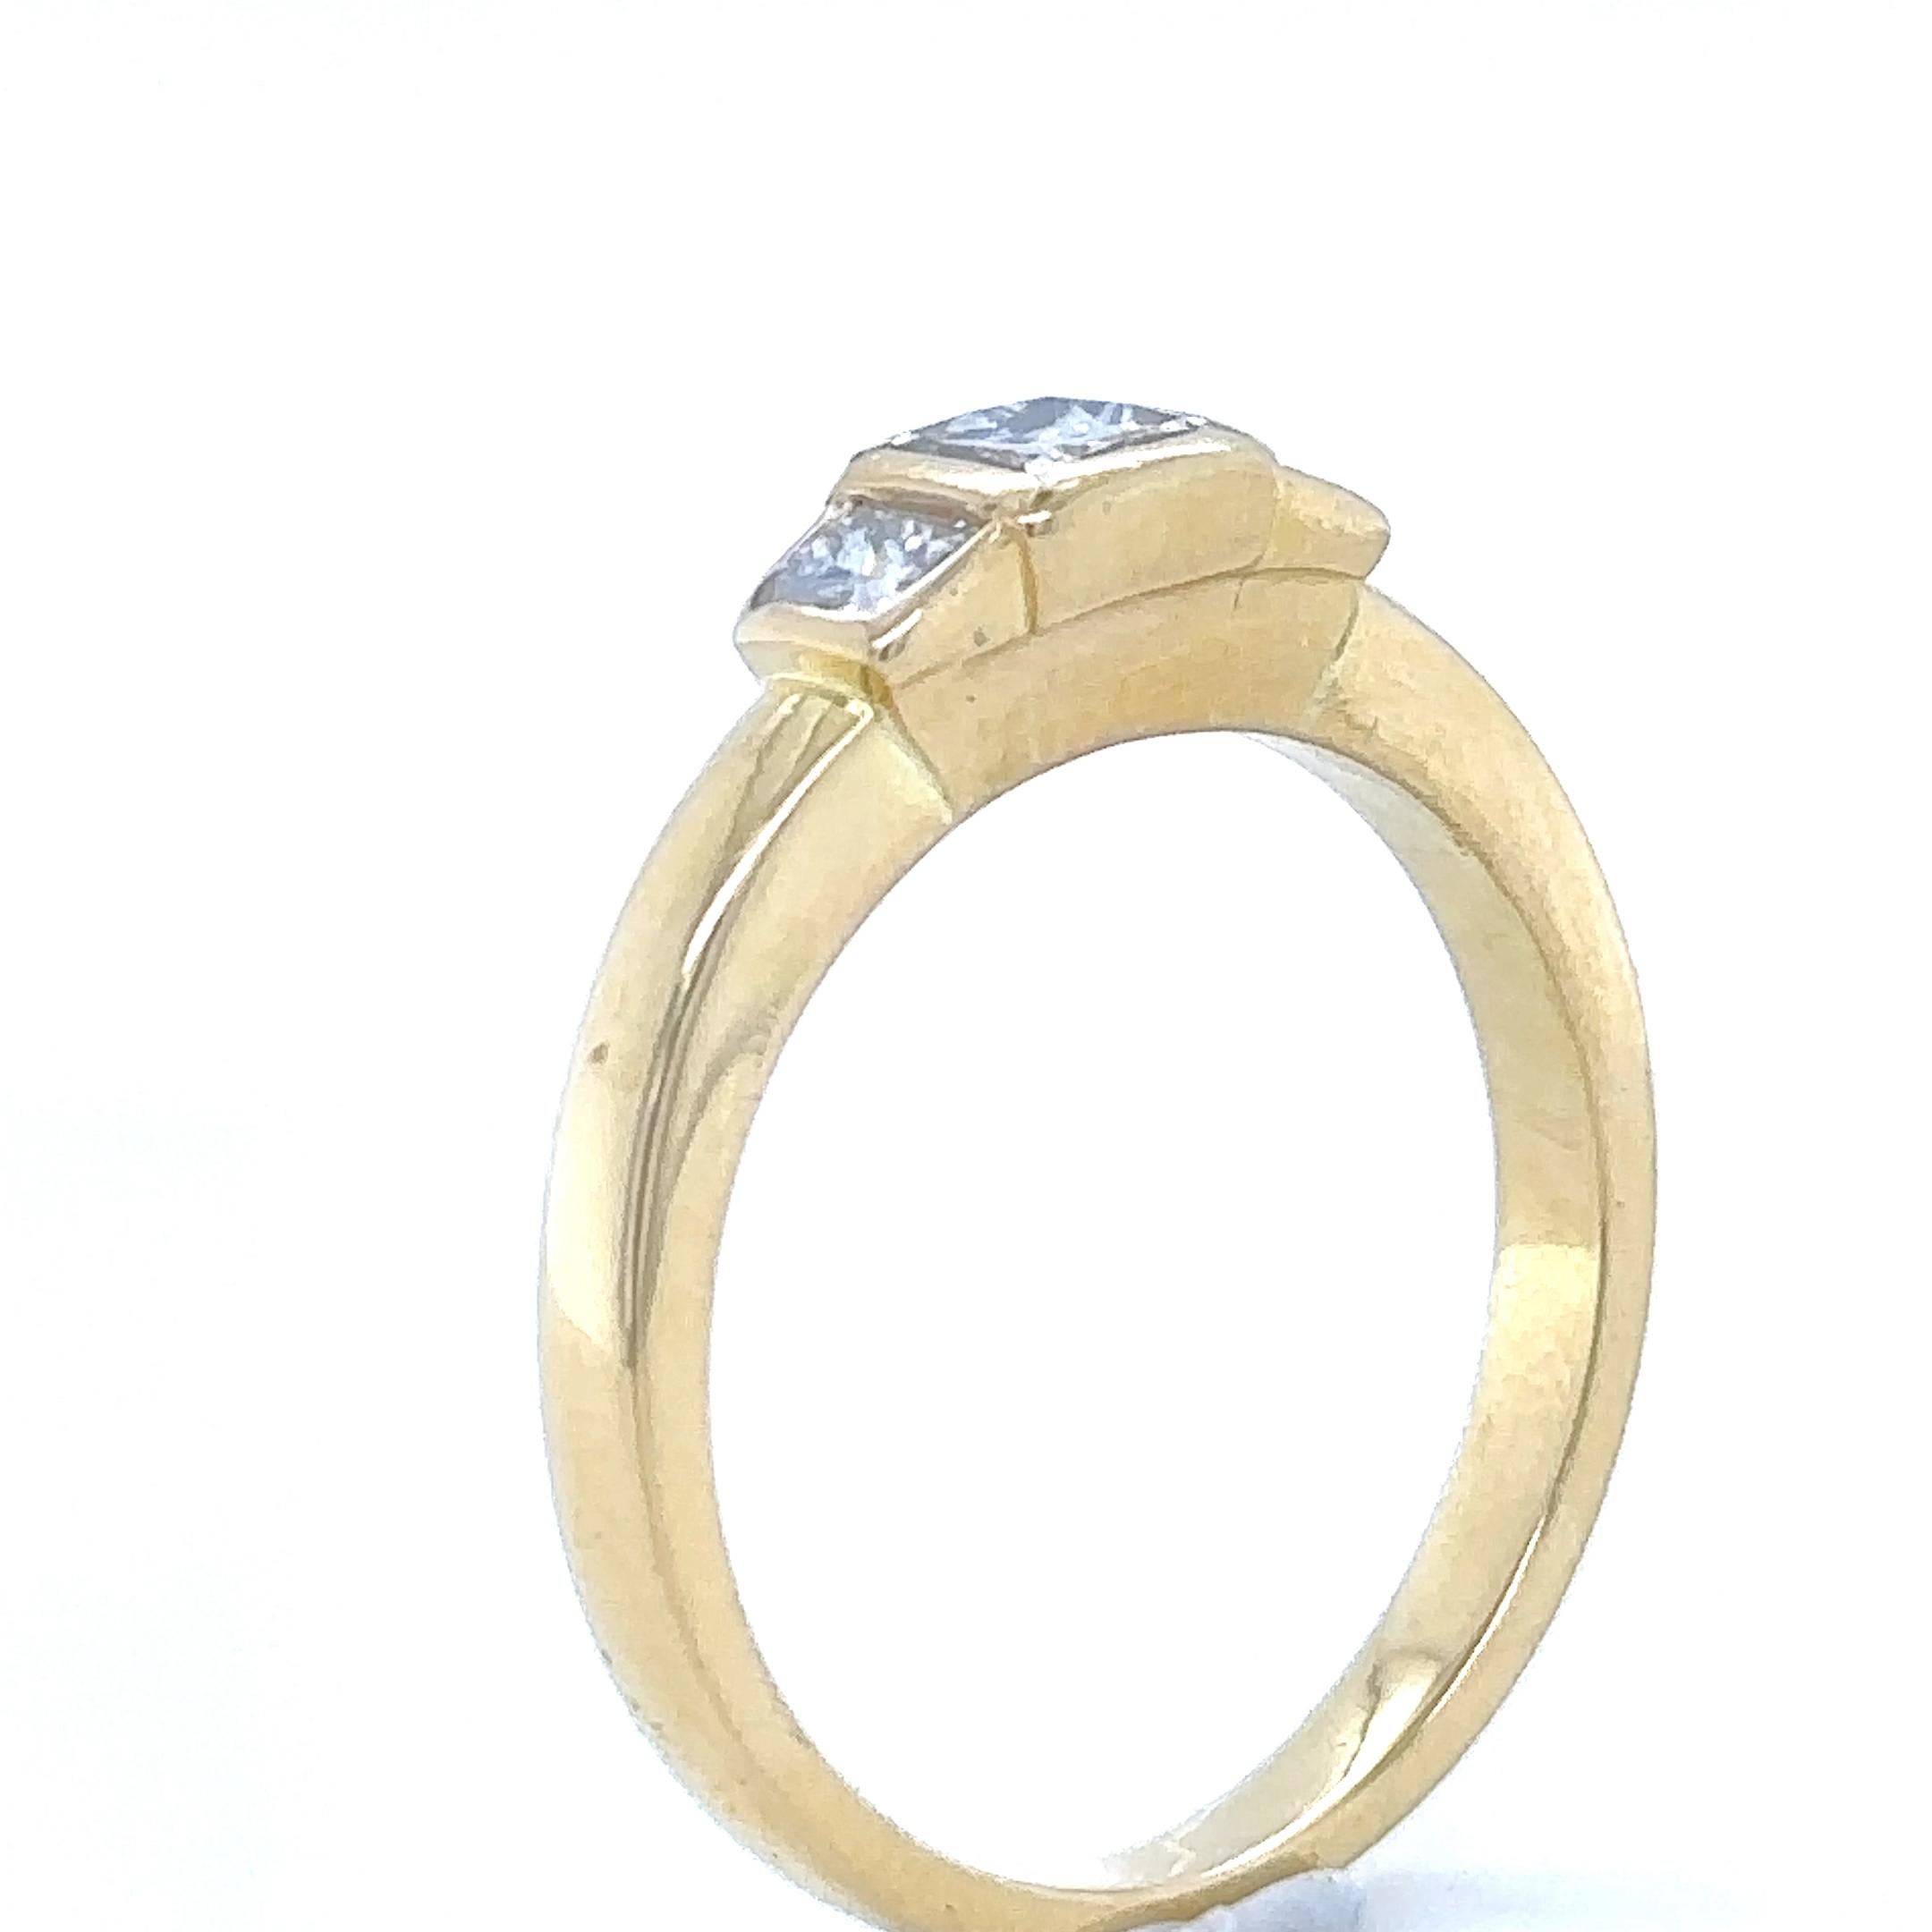 Ein Diamantring im Prinzessinnenschliff, gefasst in 18 Karat Gelbgold mit einem Diamanten im Prinzessinnenschliff auf jeder Schulter auf einem 2,4 mm breiten Band.

Diamanten 1 = 0,40ct (geschätzt), eingestuft in der Fassung als Farbe: G bis H,